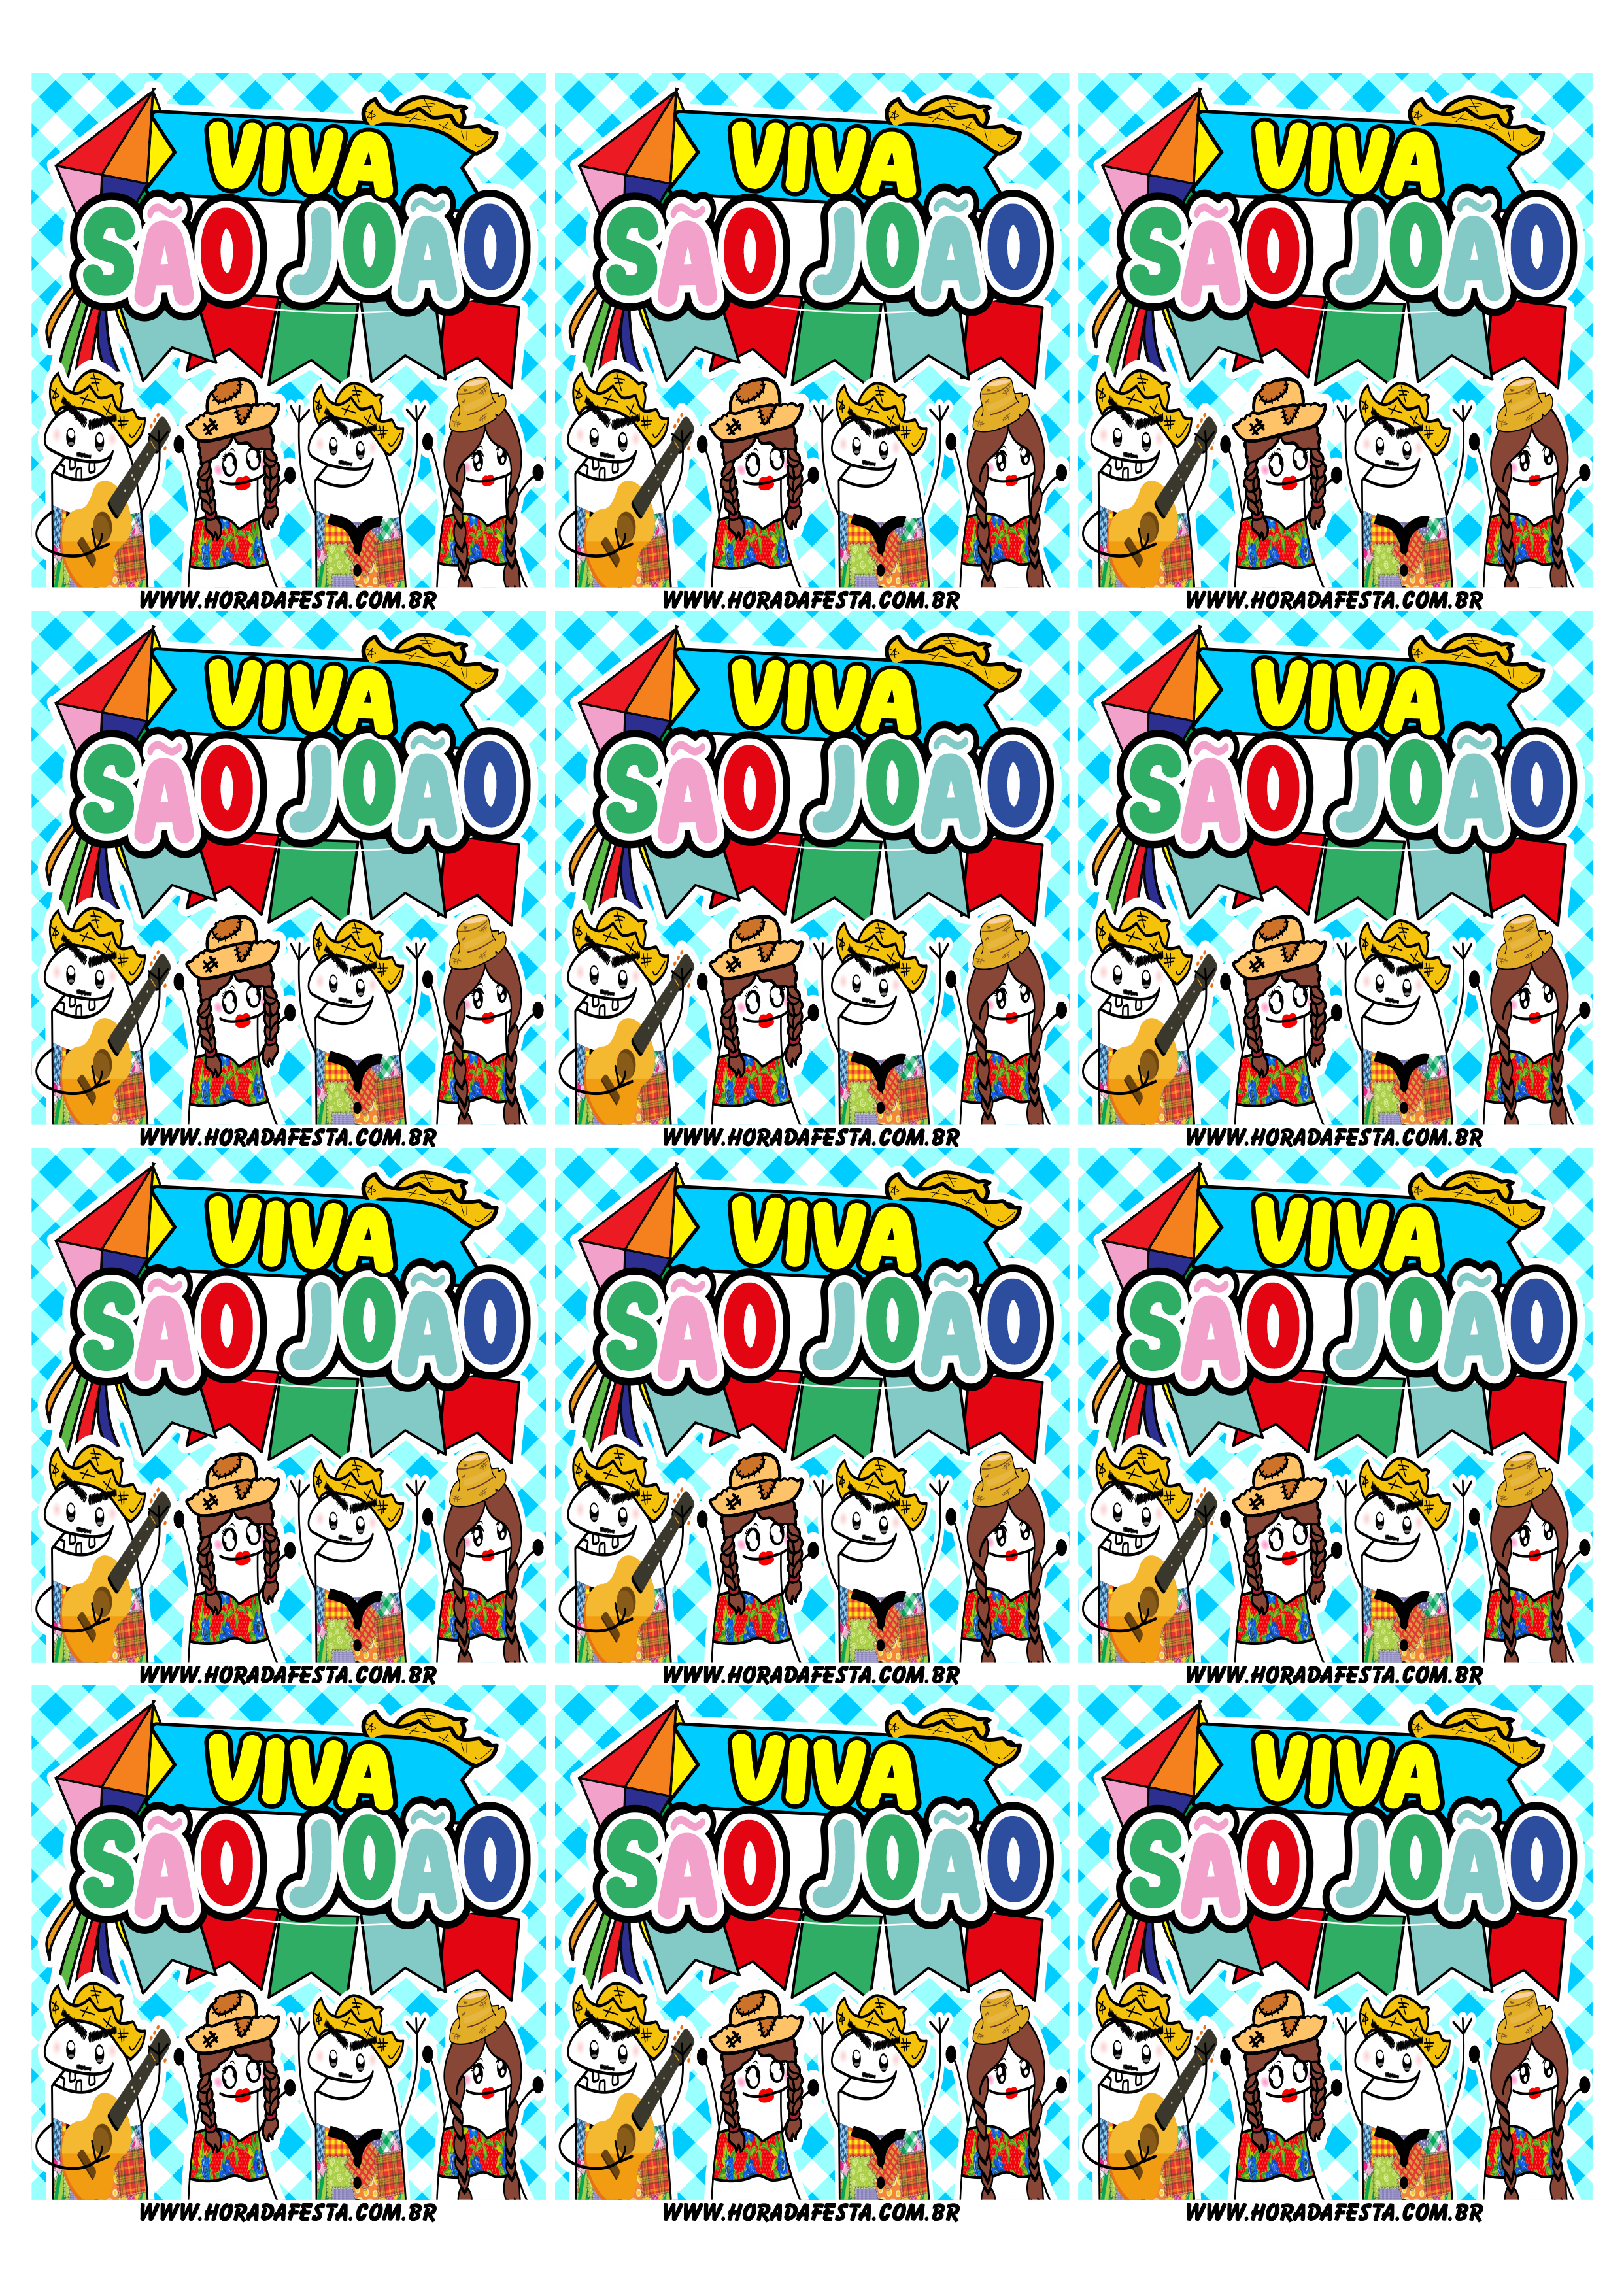 Viva são joão adesivo tag sticker quadrado flork of cows figurinhas engraçadas 12 imagens png